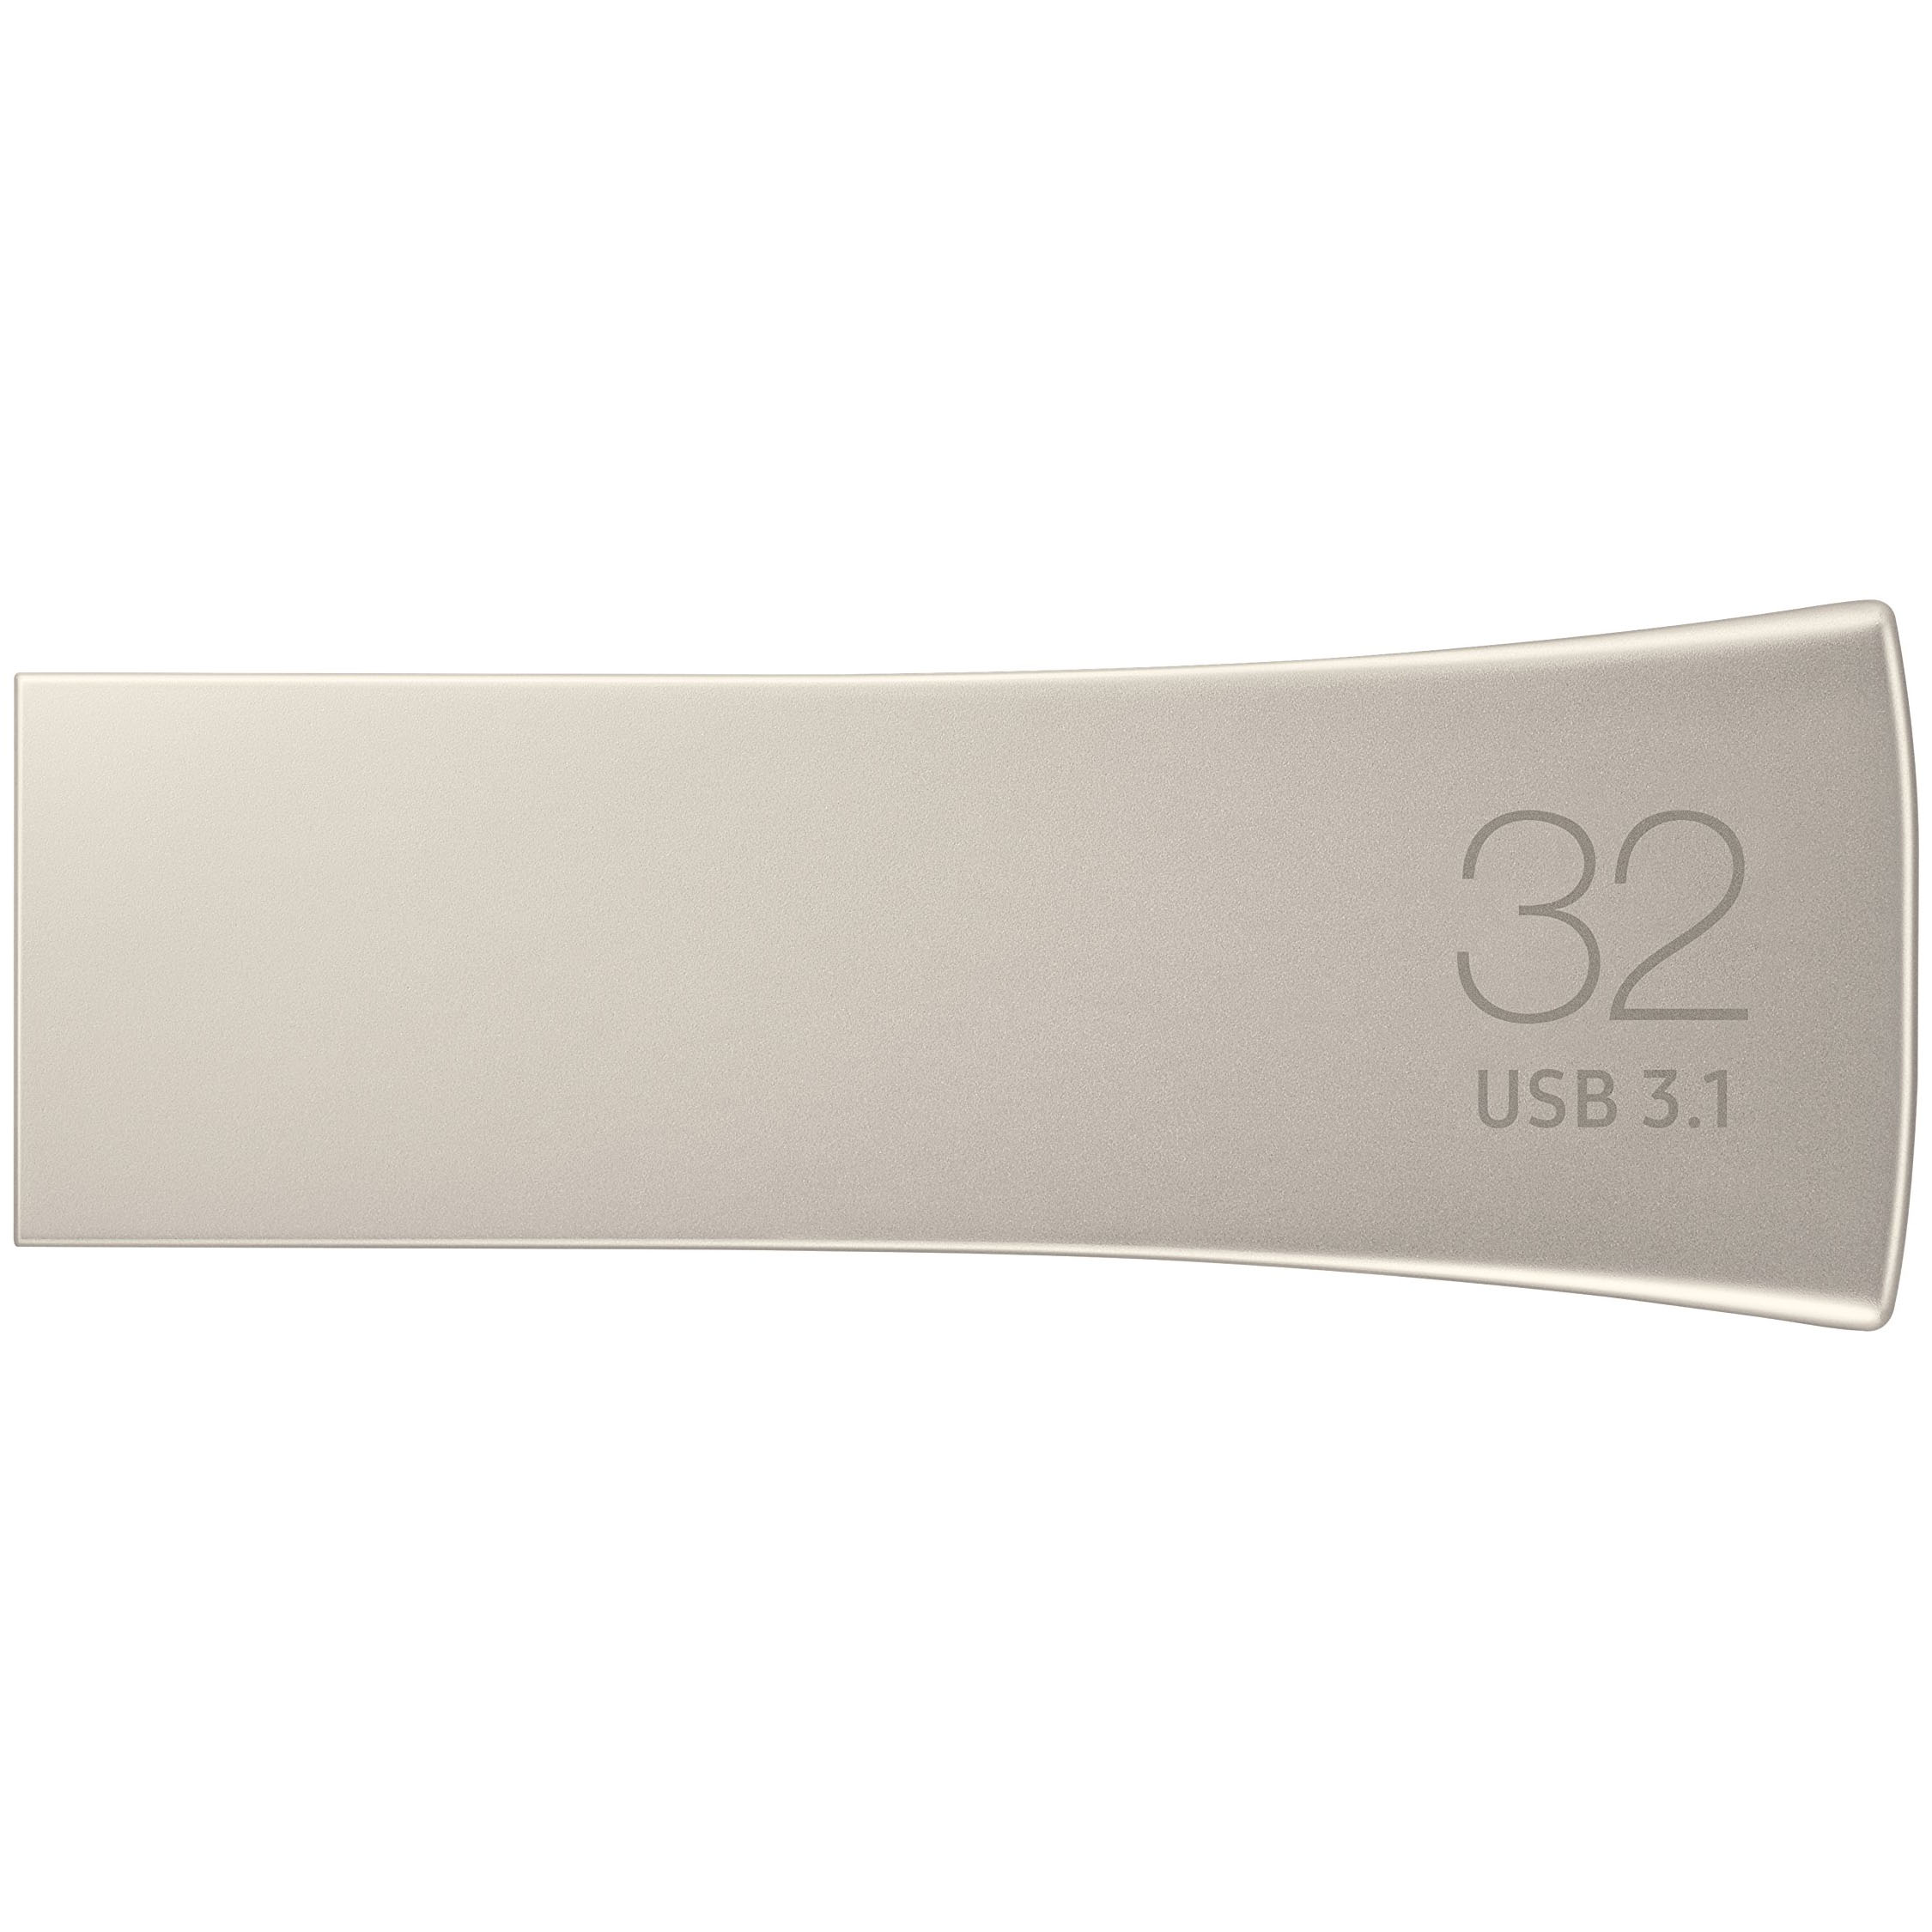 USB 32GB Samsung Bar Plus Silver 